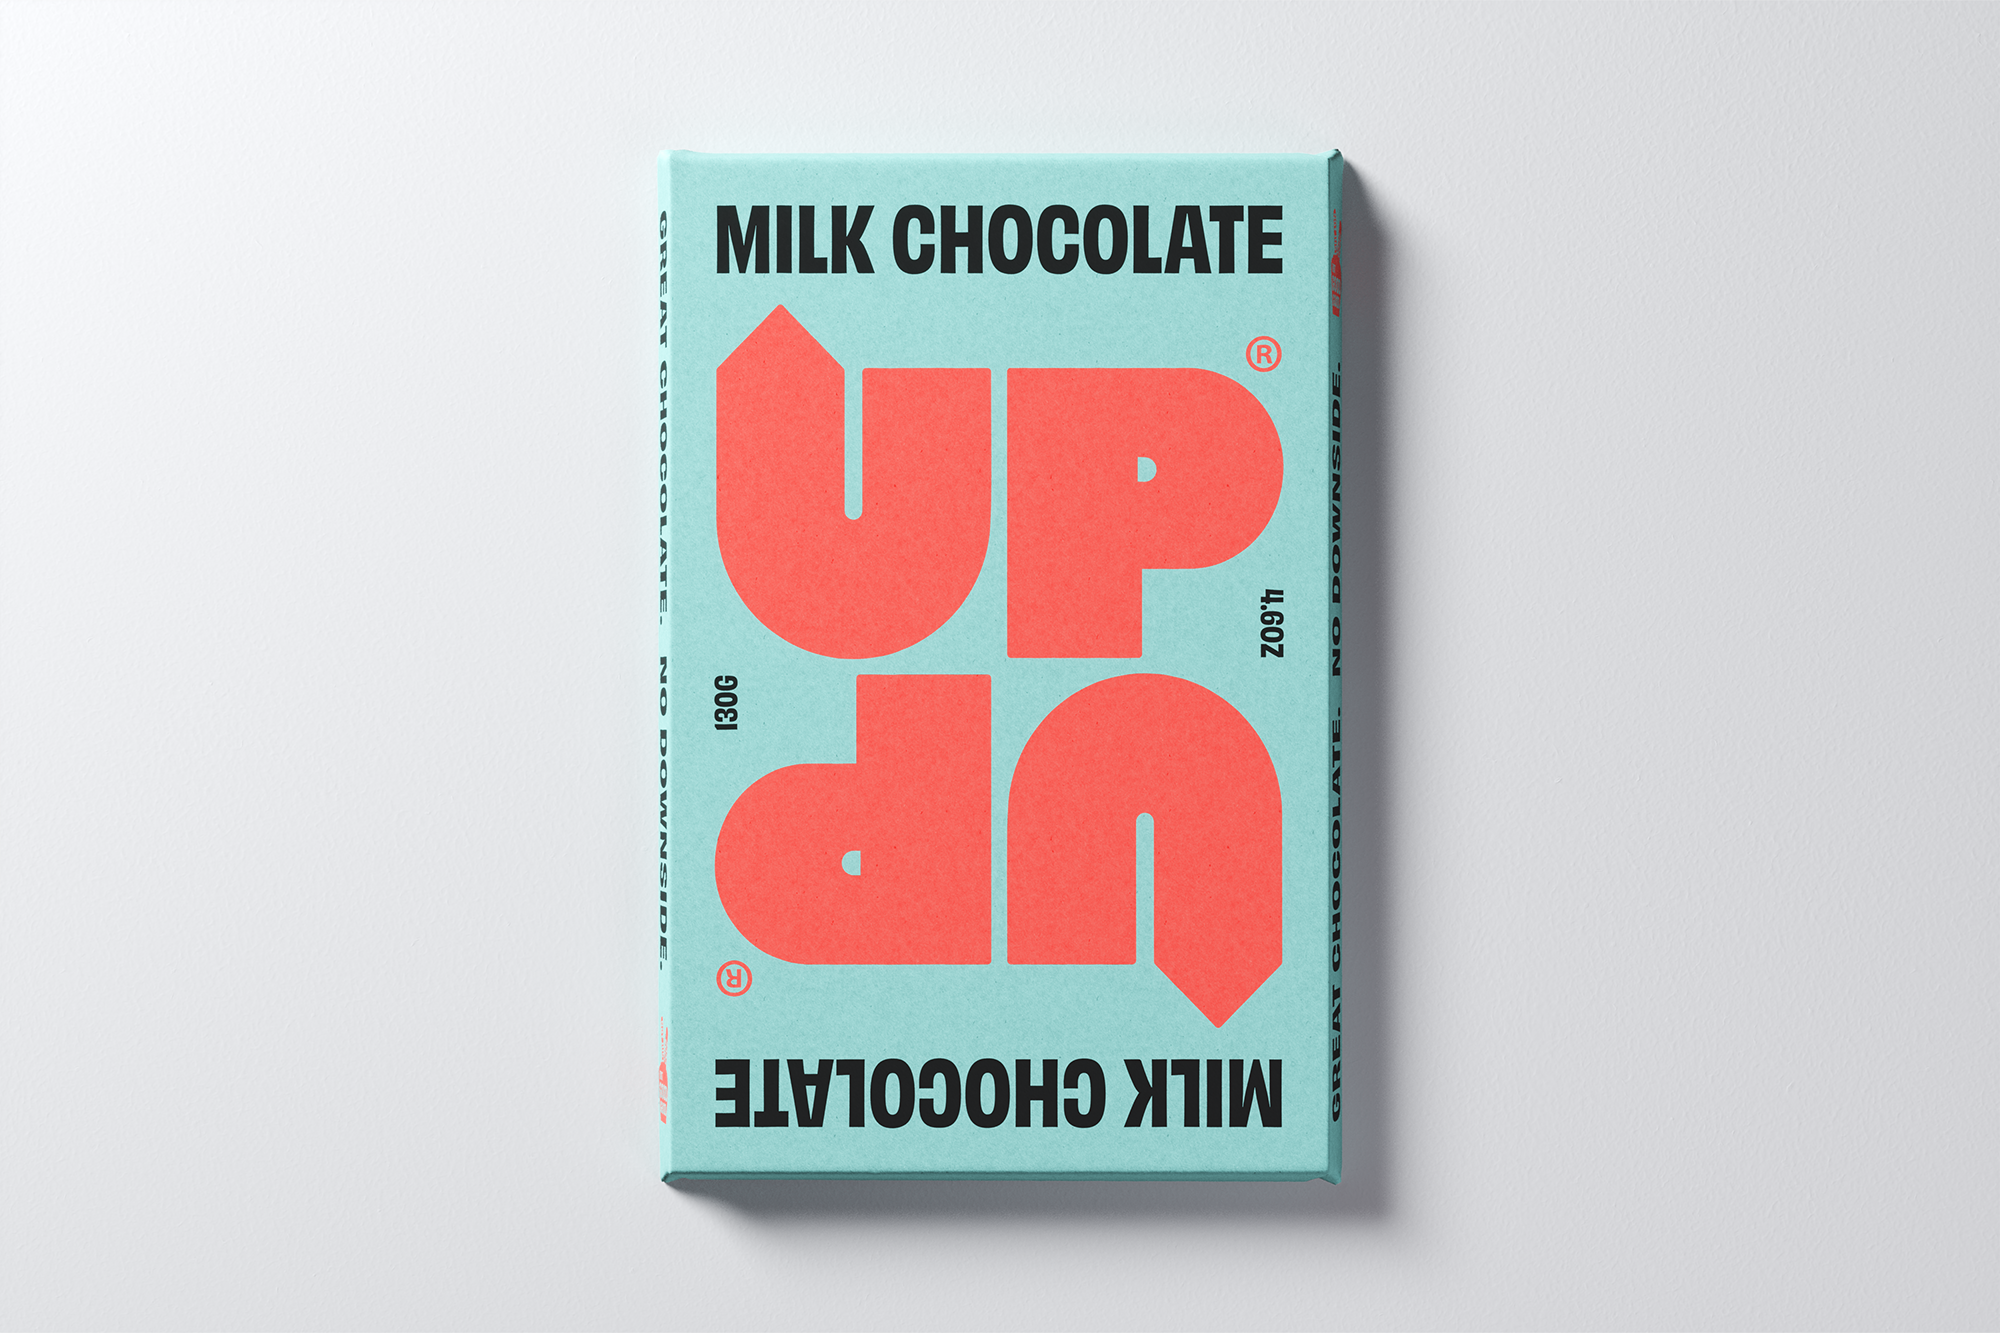 UP-UP Chocolate 130g Original Milk Chocolate Bar 